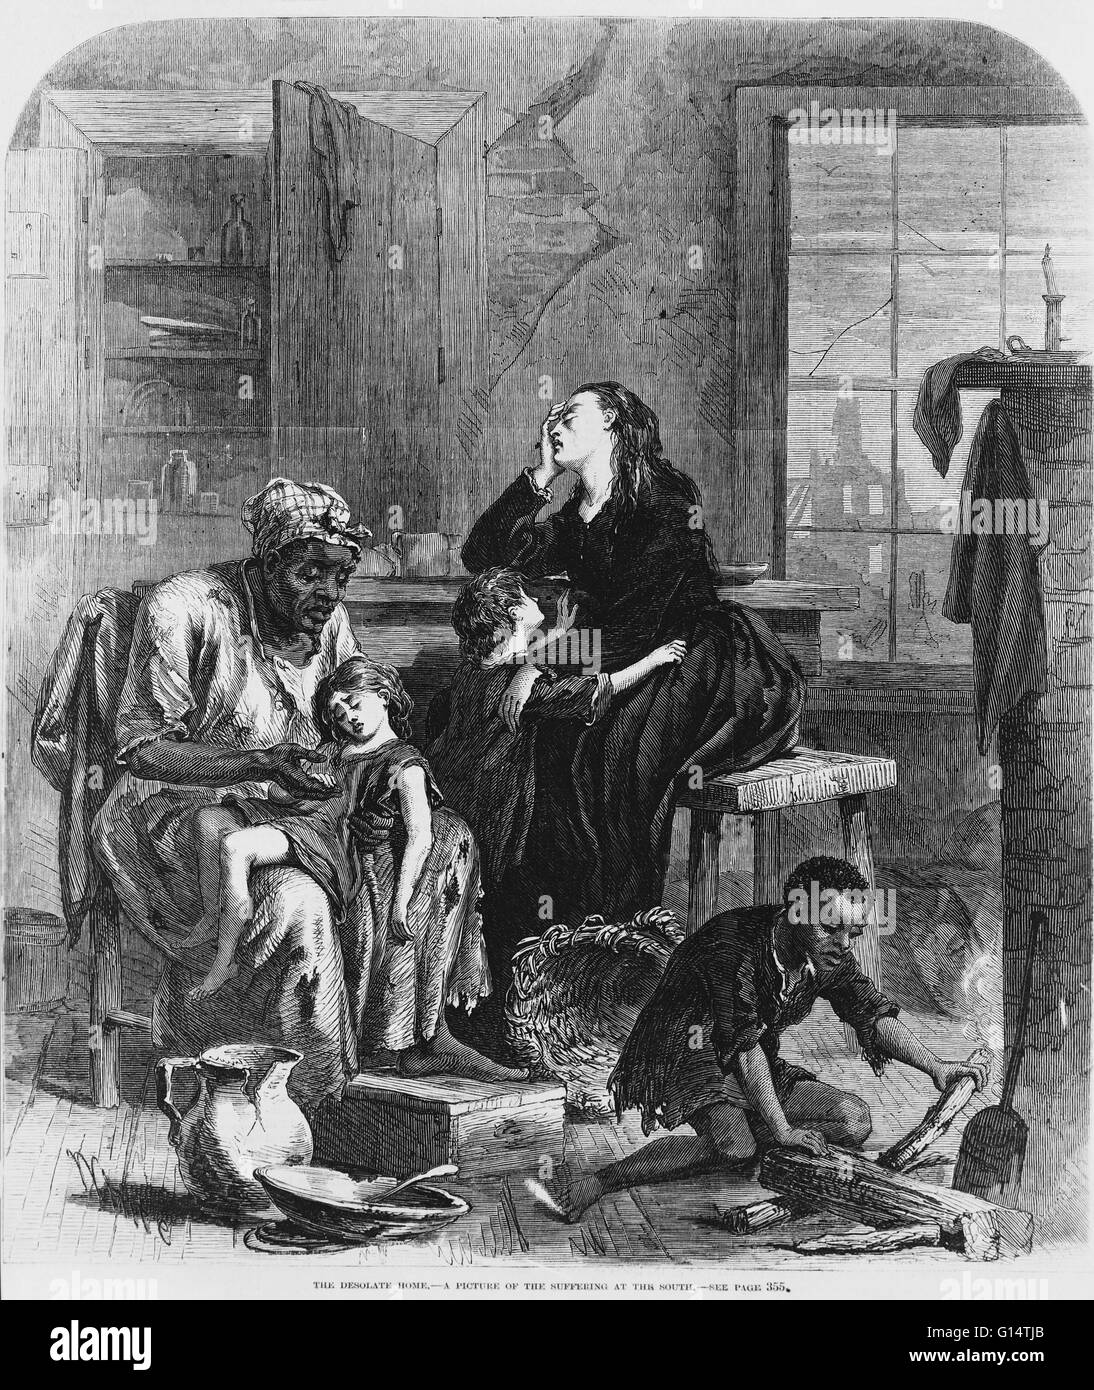 Una incisione su legno, 'il desolato Home", pubblicato in Frank Leslie Giornale Illustrato in 1867, mostrando la sofferenza nel sud durante la ricostruzione dopo la Guerra Civile Americana. Foto Stock